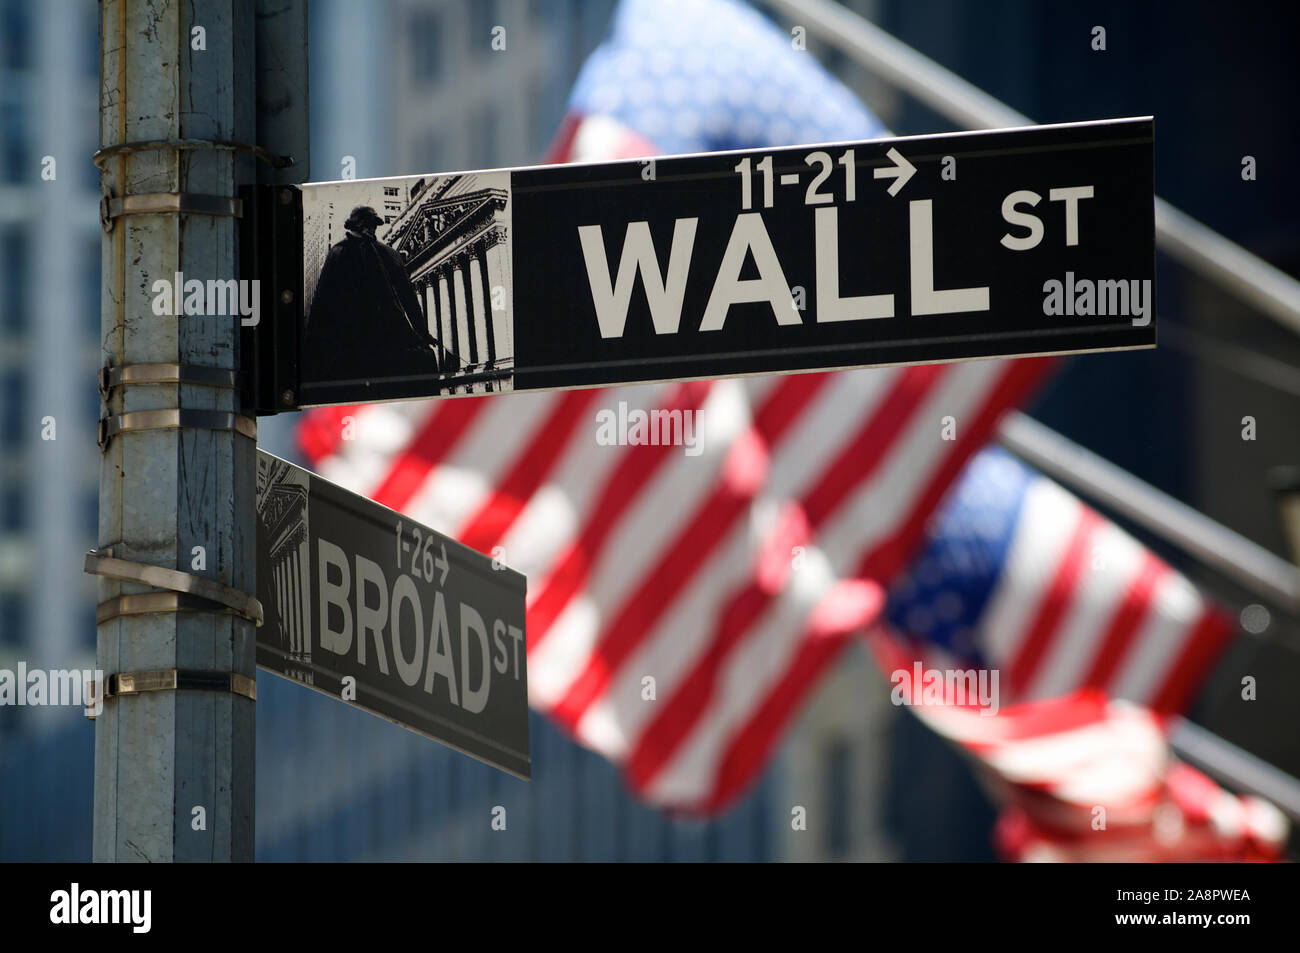 NEW YORK CITY - 7. AUGUST 2010: amerikanische Fahnen wehen hinter ein Zeichen für die Wall Street, das Symbol des amerikanischen Kapitalismus. Stockfoto